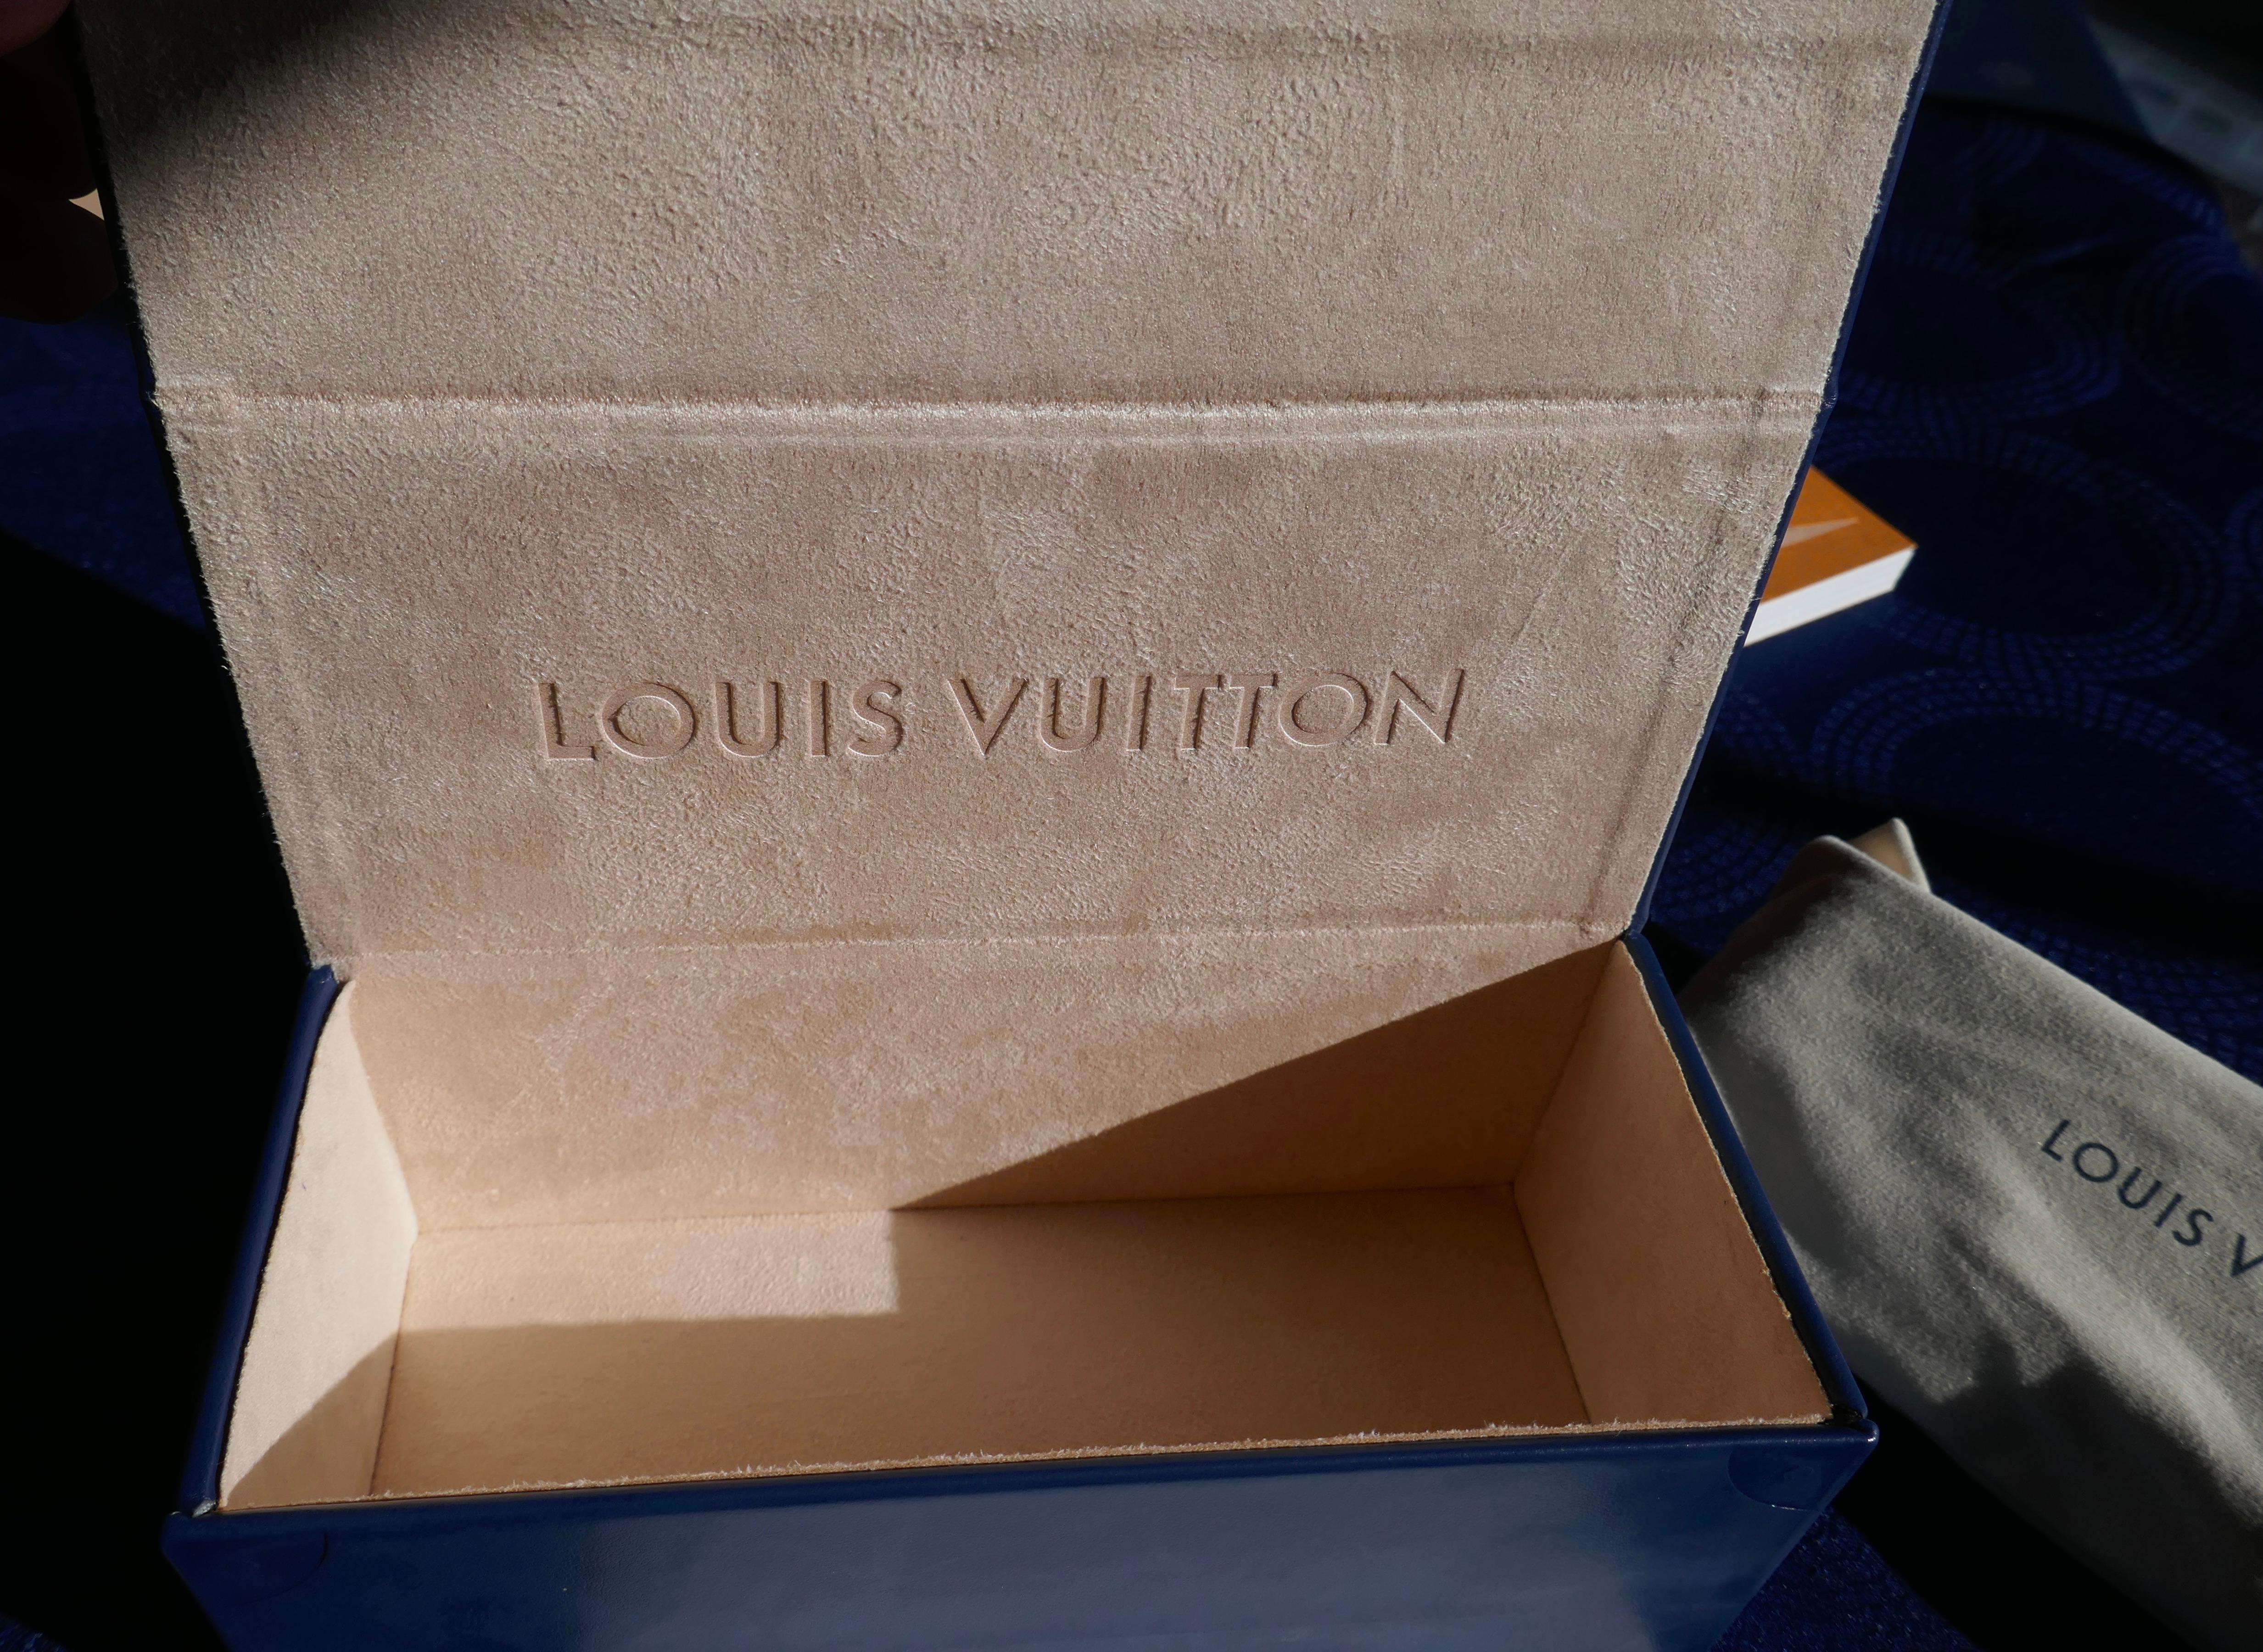 Pair of Louis Vuitton Paris Texas Sunshades Authentic With Receipt Case Box Etc For Sale 1